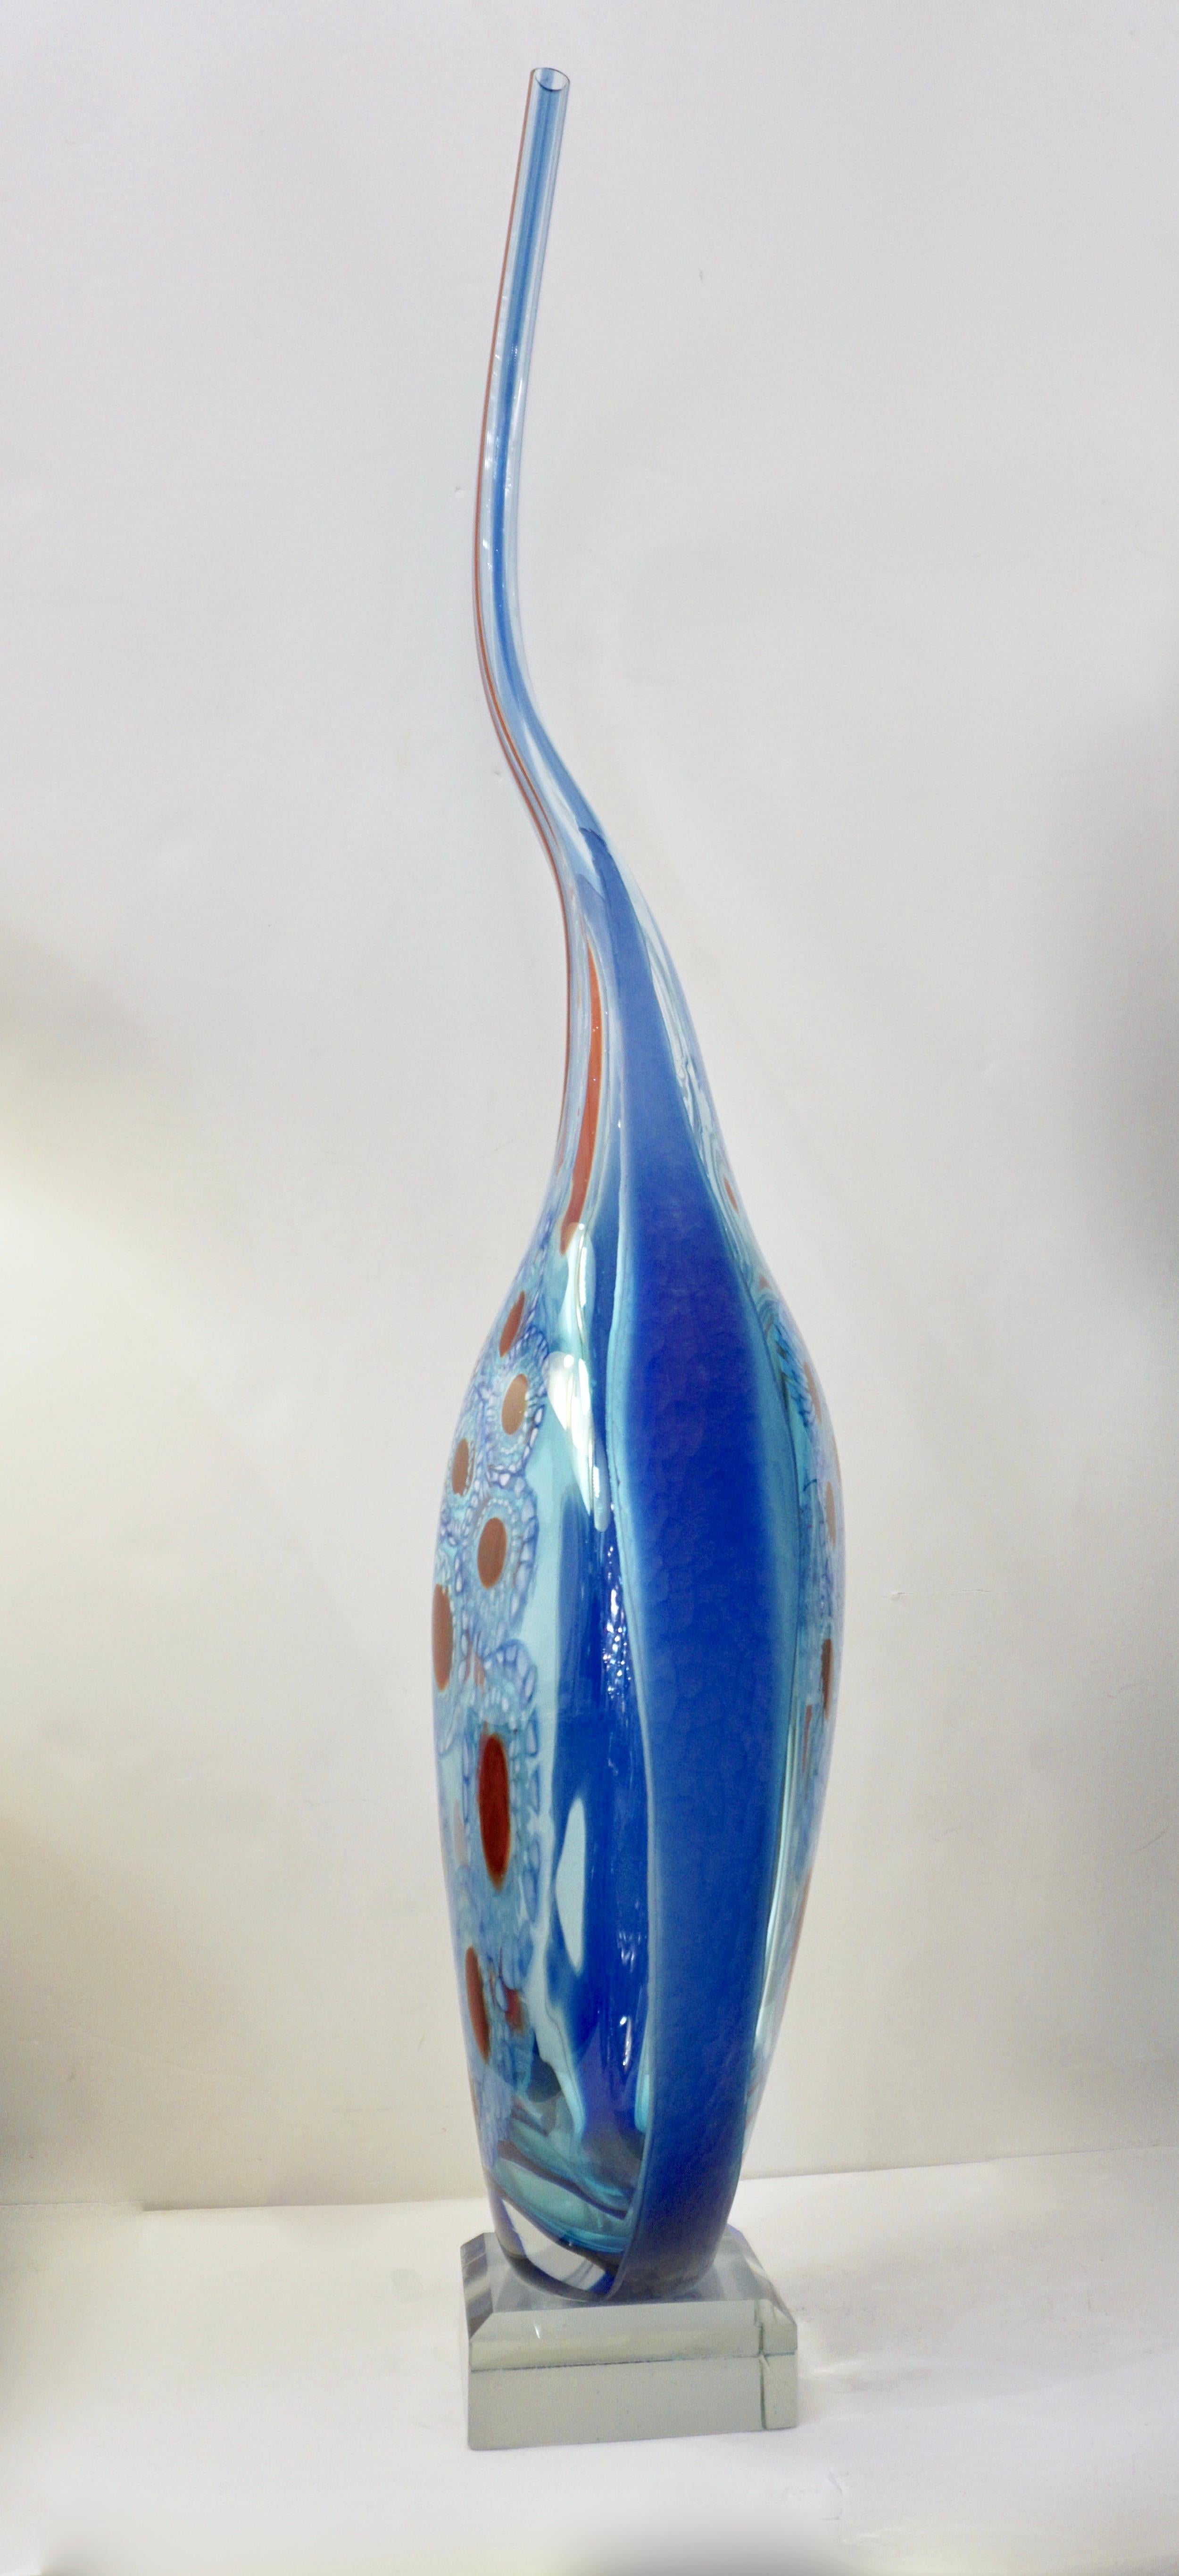 Vase en verre d'art italien monumental, œuvre d'art unique de Davide Donà, pièce signée en verre soufflé de Murano. Le corps aigue-marine teinté de reflets bleus est habilement embrassé par la superposition de côtés bleu saphir turquoise et souligné